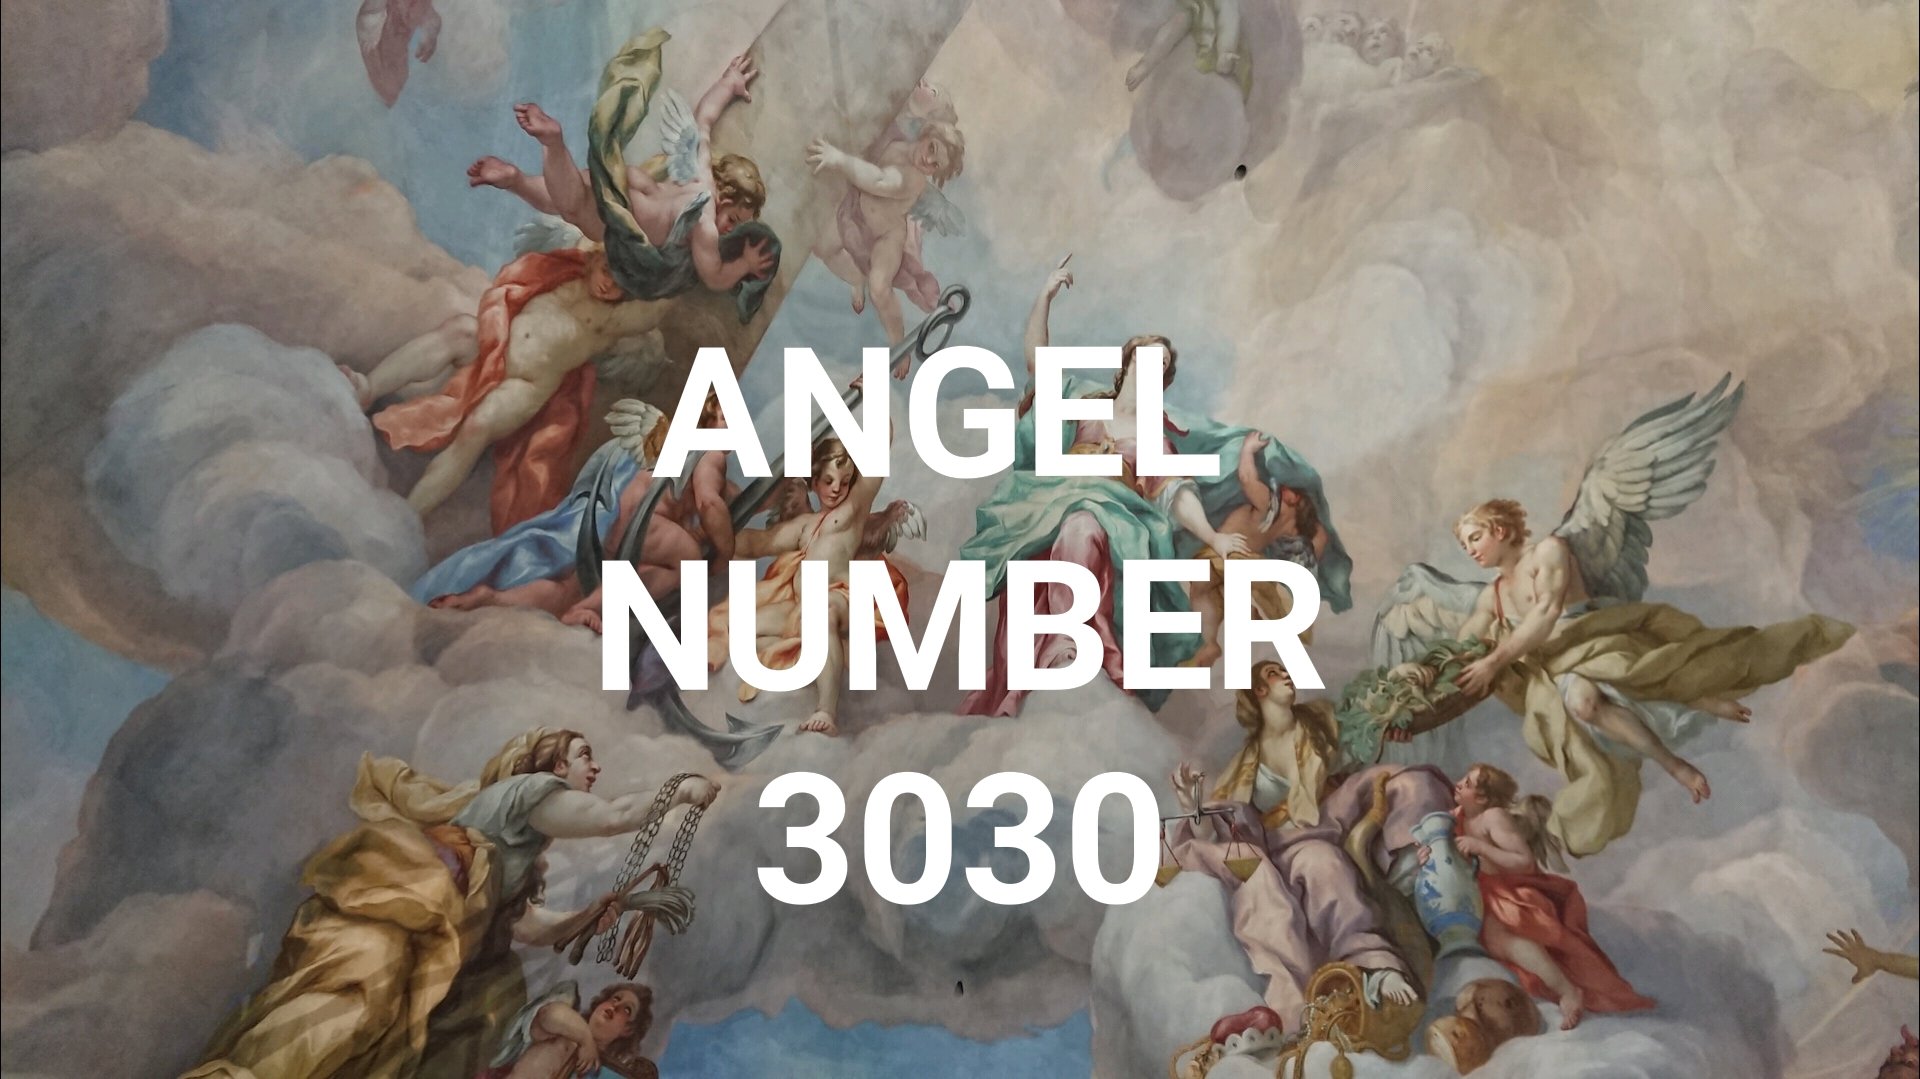 Angel Number 3030